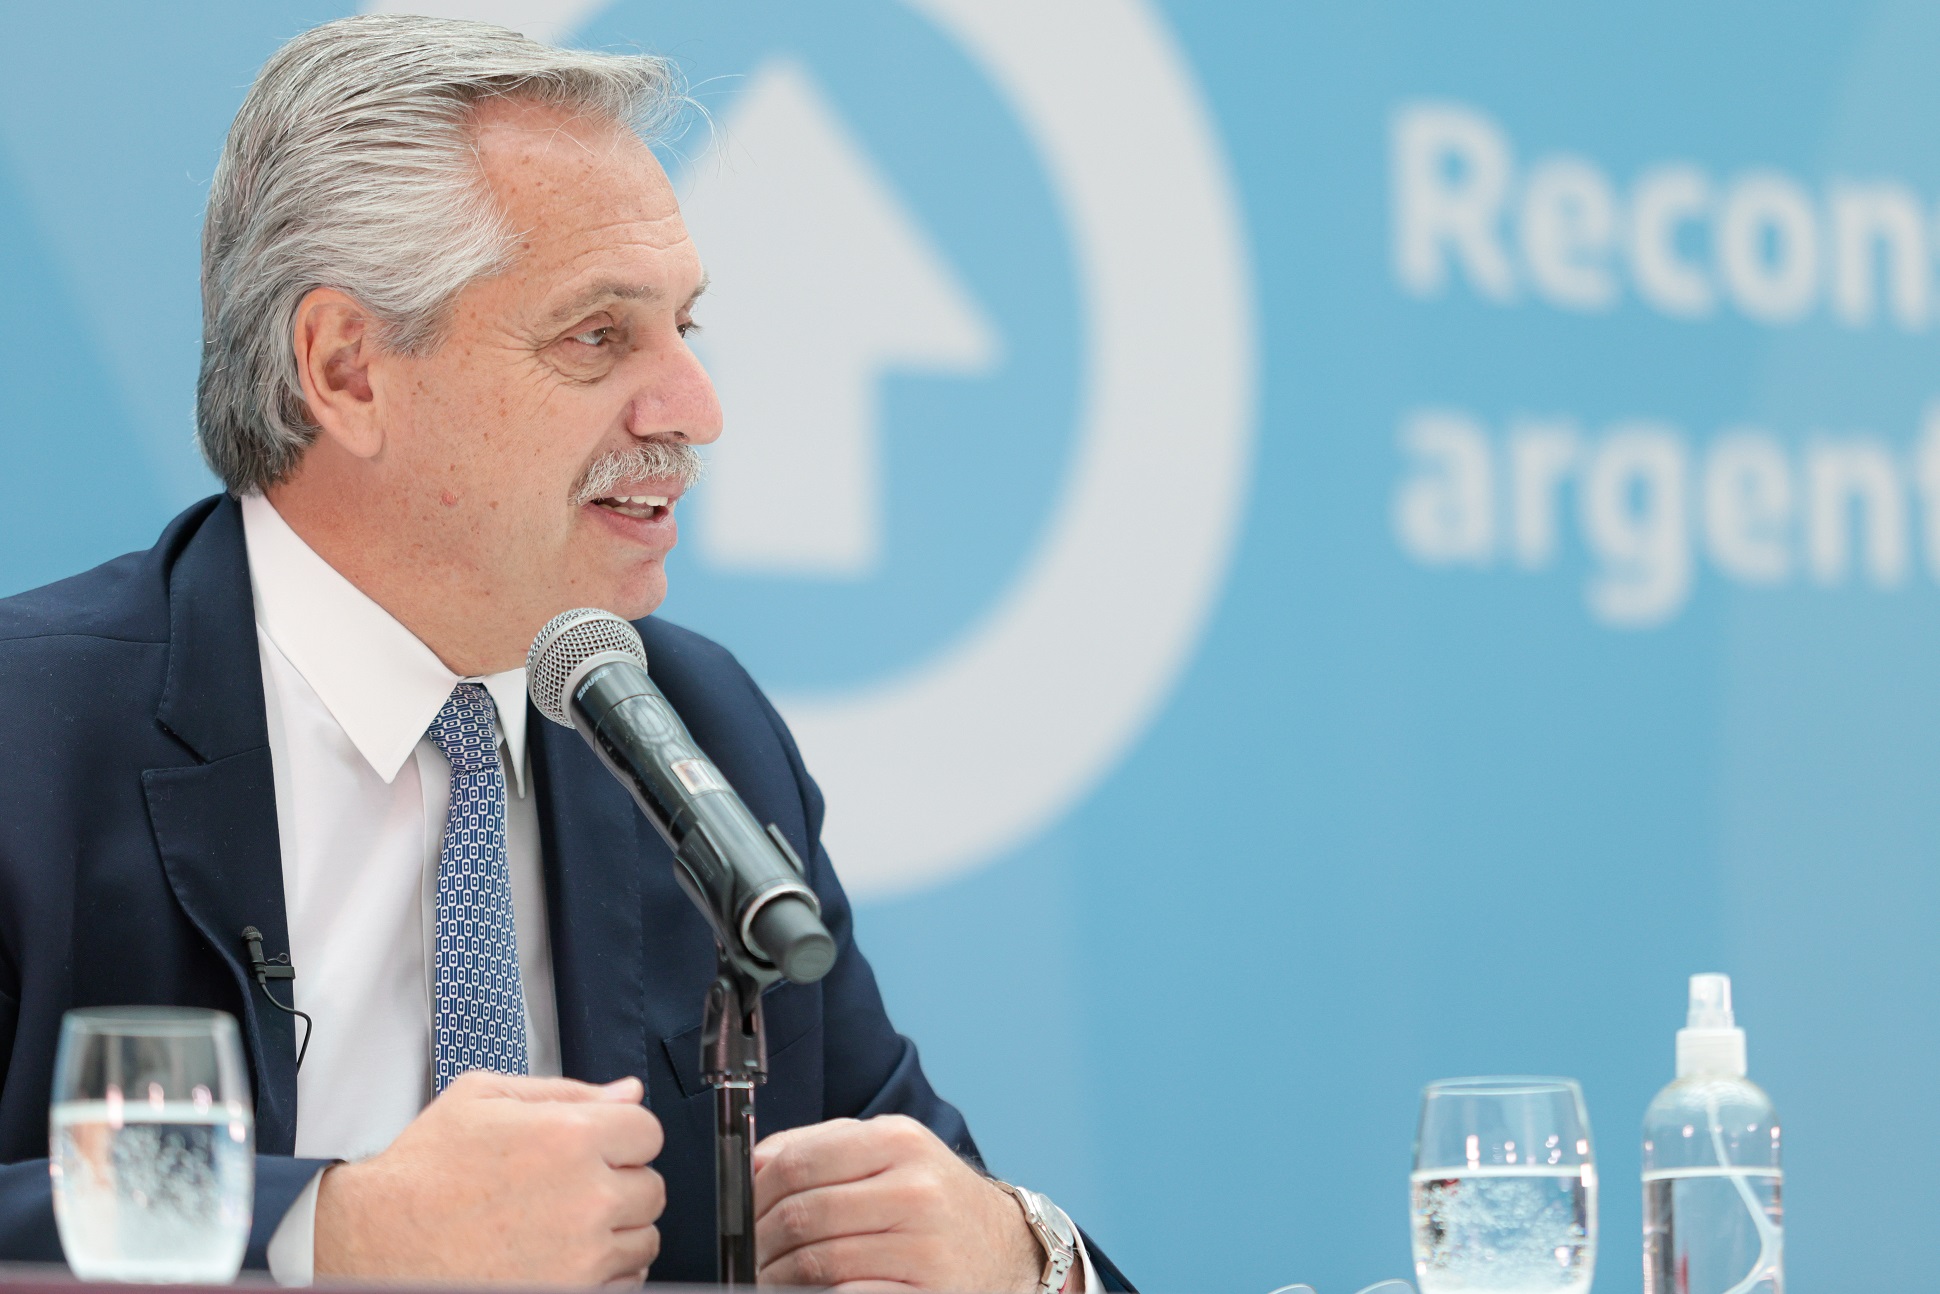  Alberto Fernández: “La industria es el motor central del desarrollo y el crecimiento”